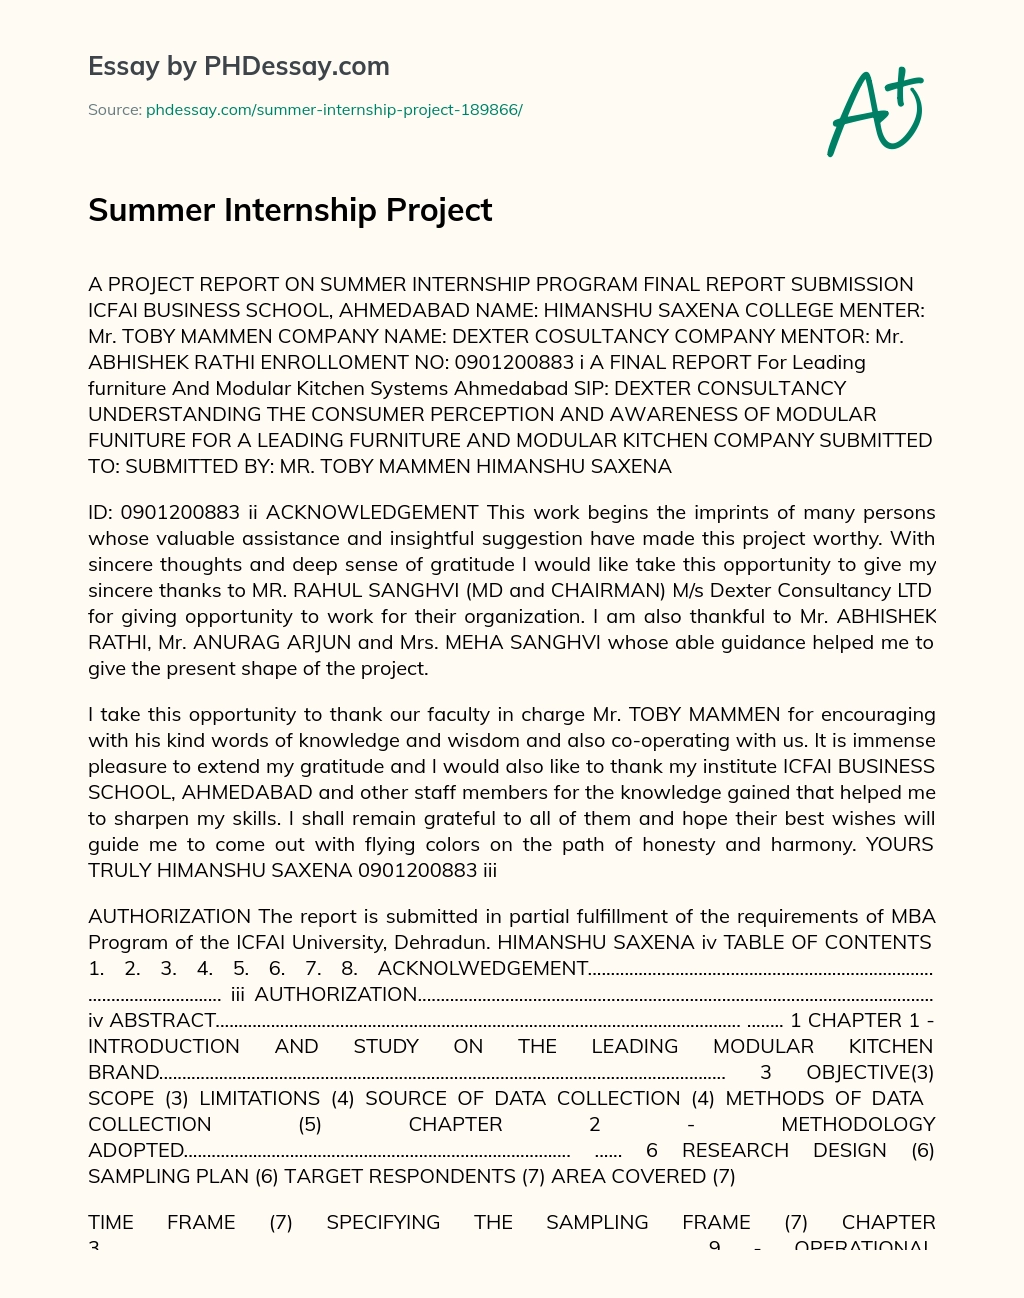 Summer Internship Project essay